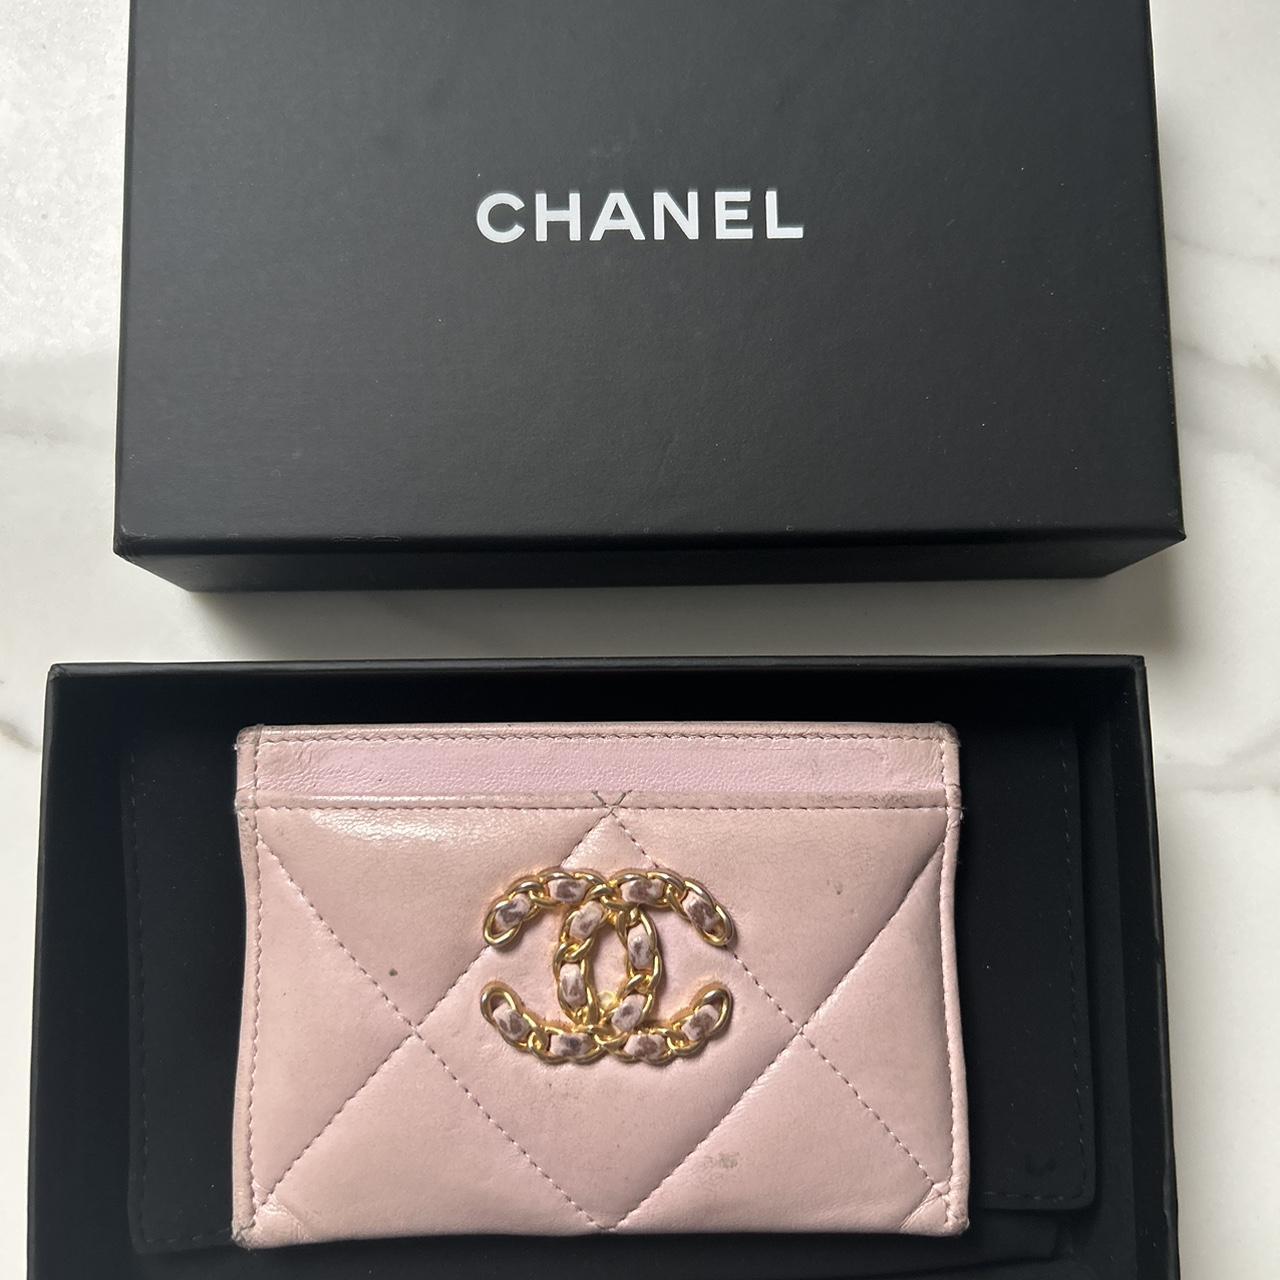 Chanel 2021 2021 Chanel 19 Card Holder Card Holder - Pink Wallets